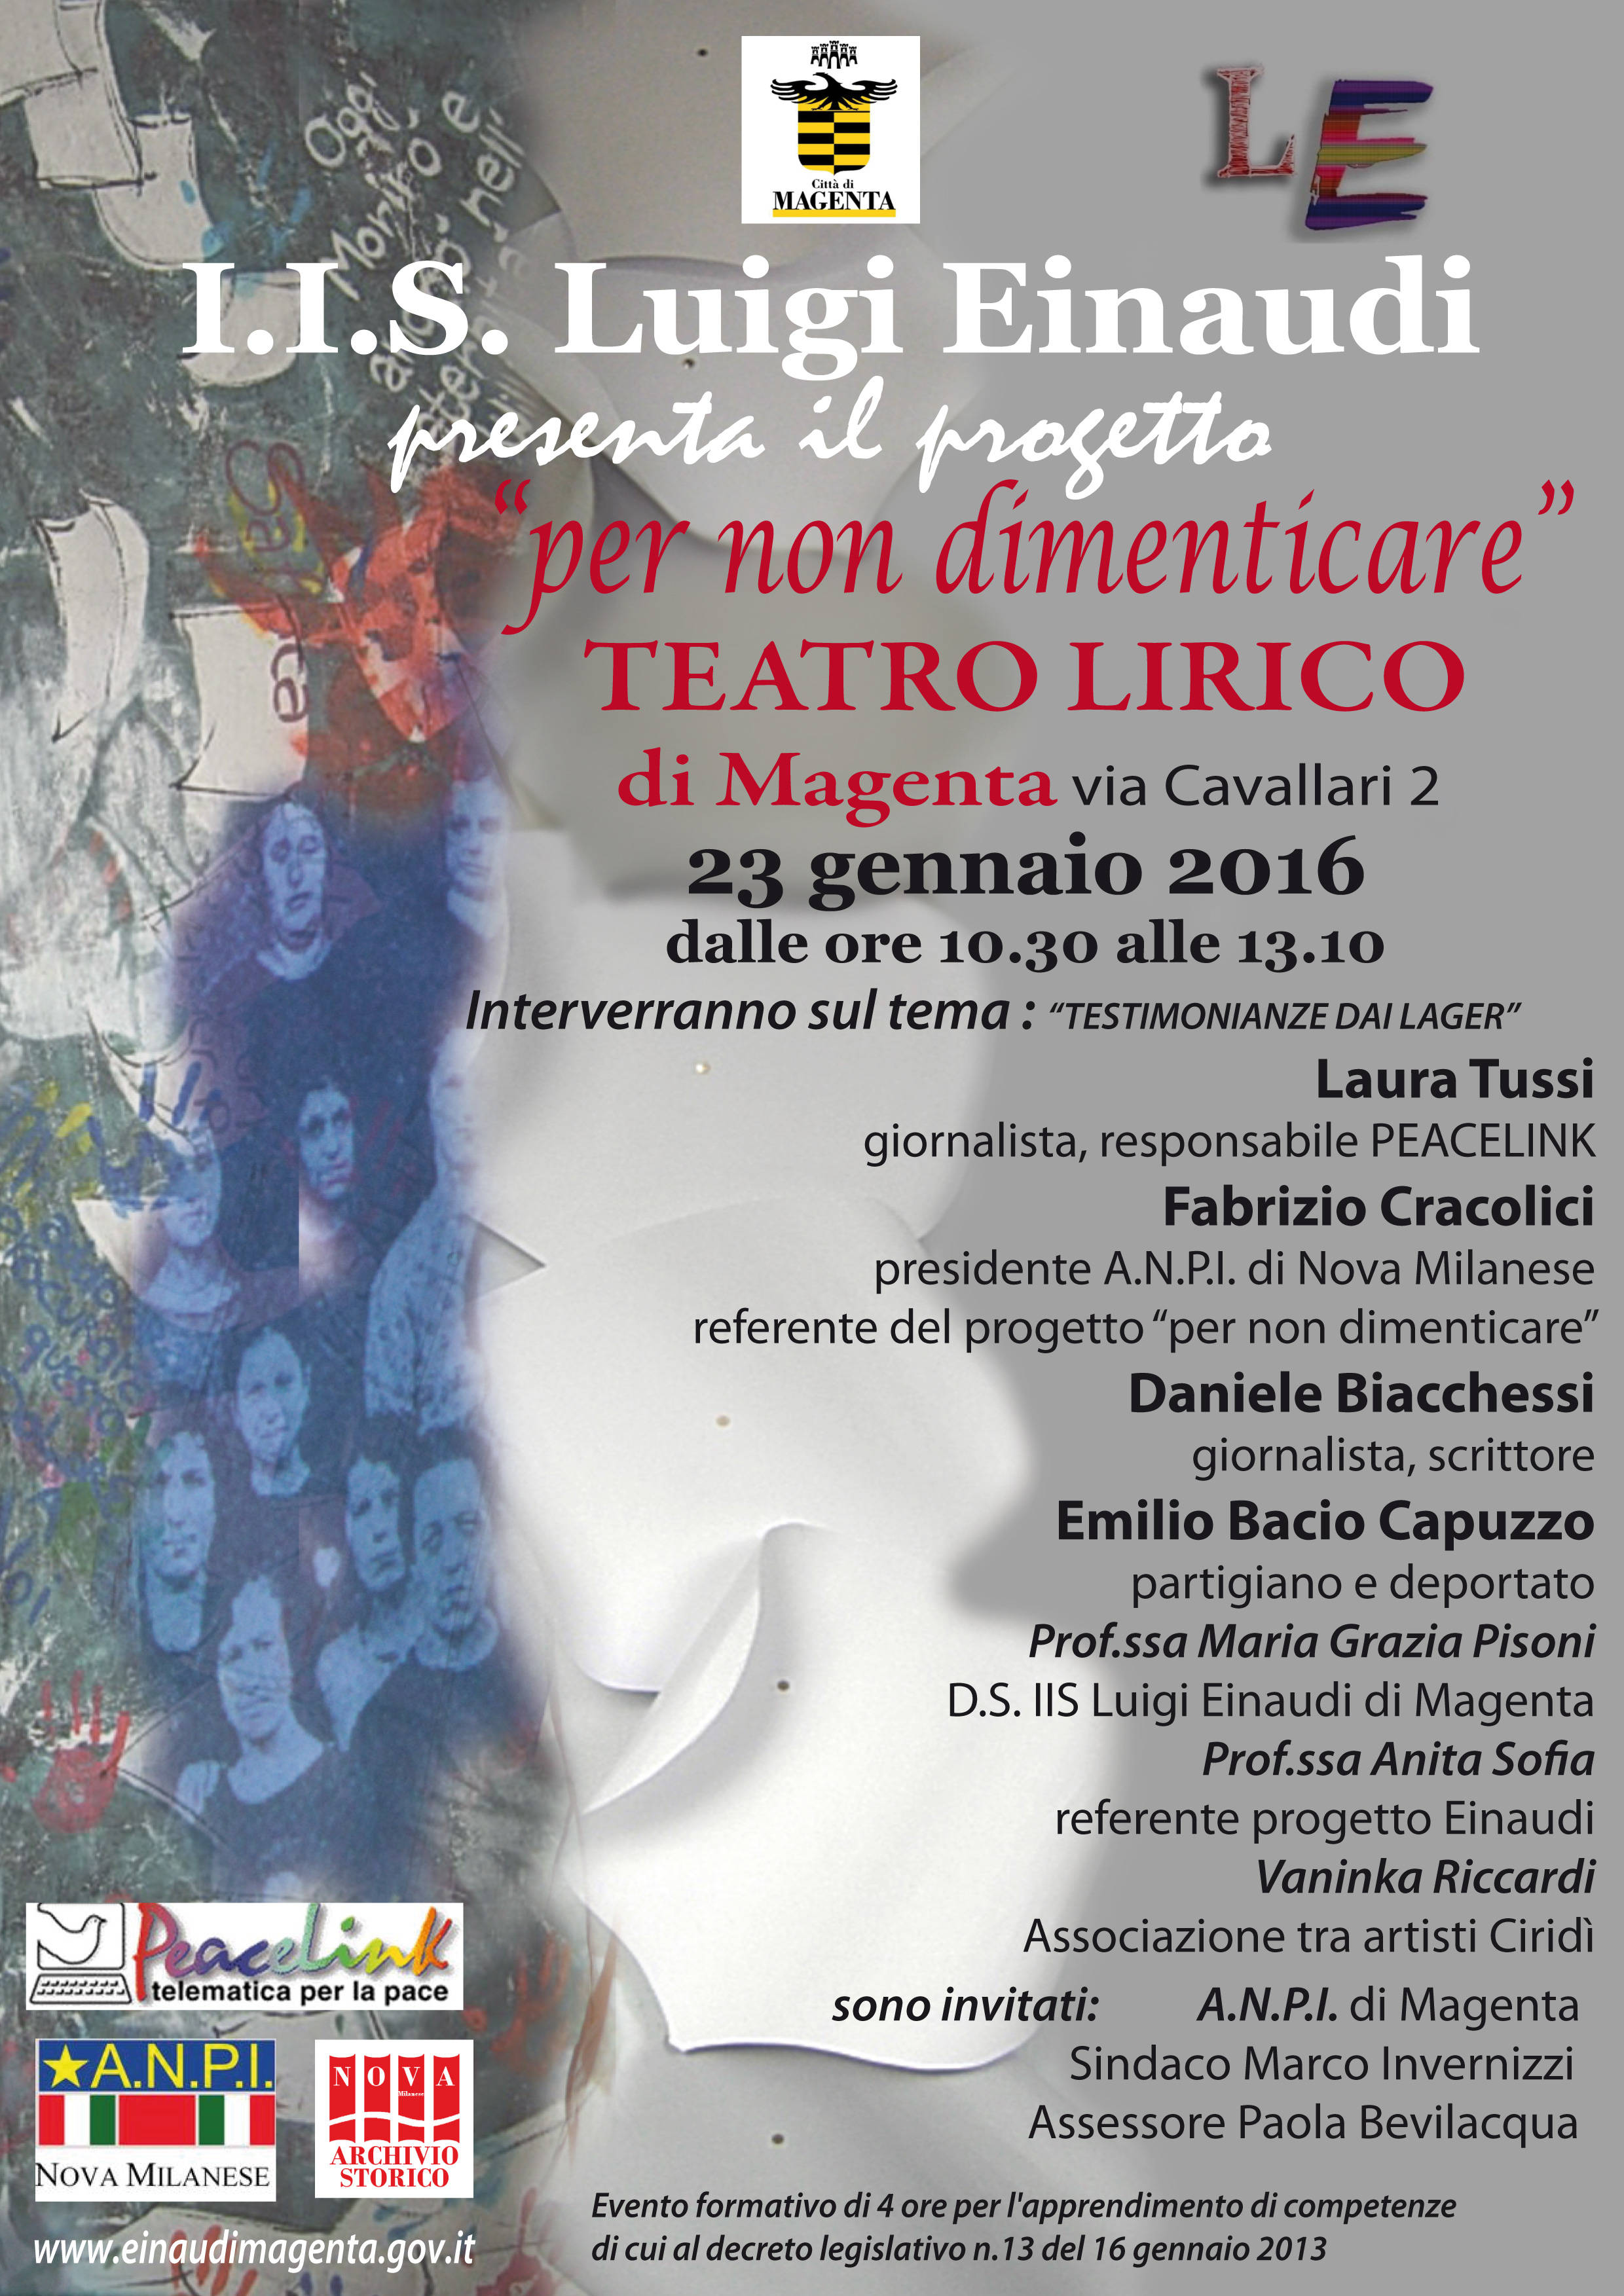 Giorno della Memoria 2016 al Teatro Lirico di Magenta